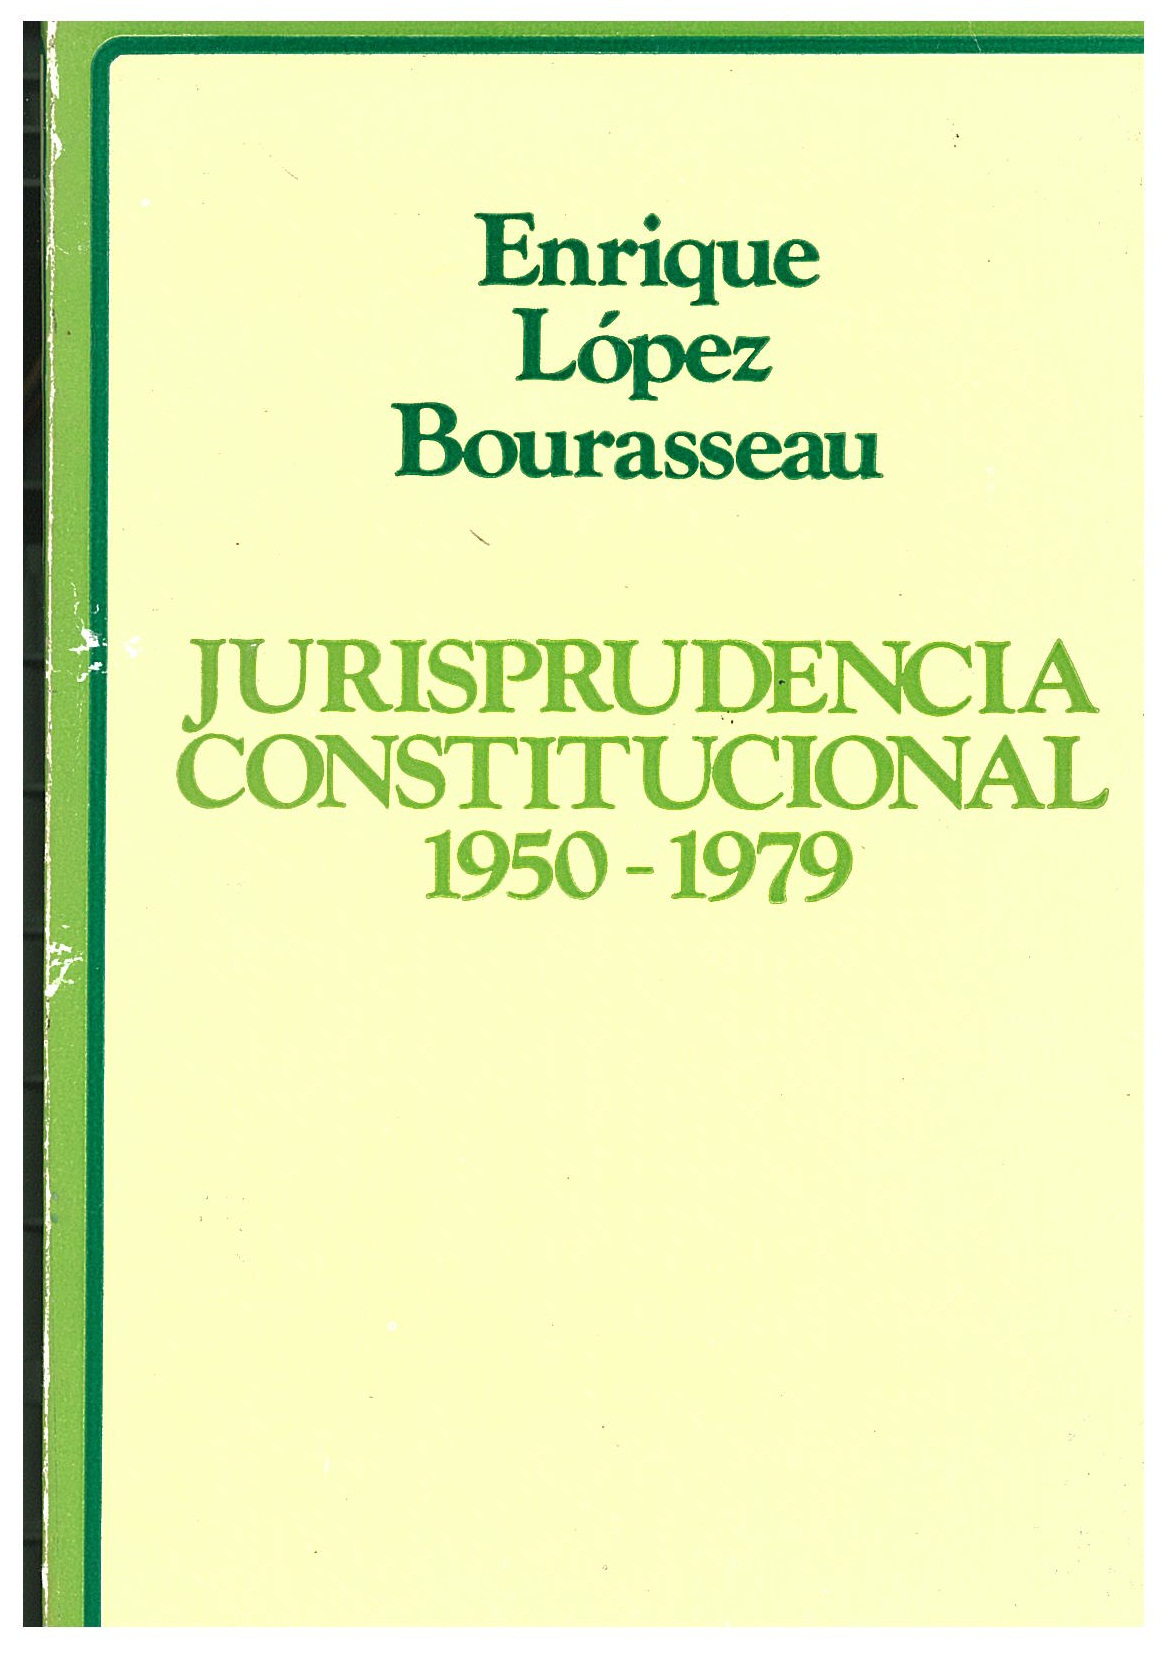 Jurisprudencia constitucional 1950-1979